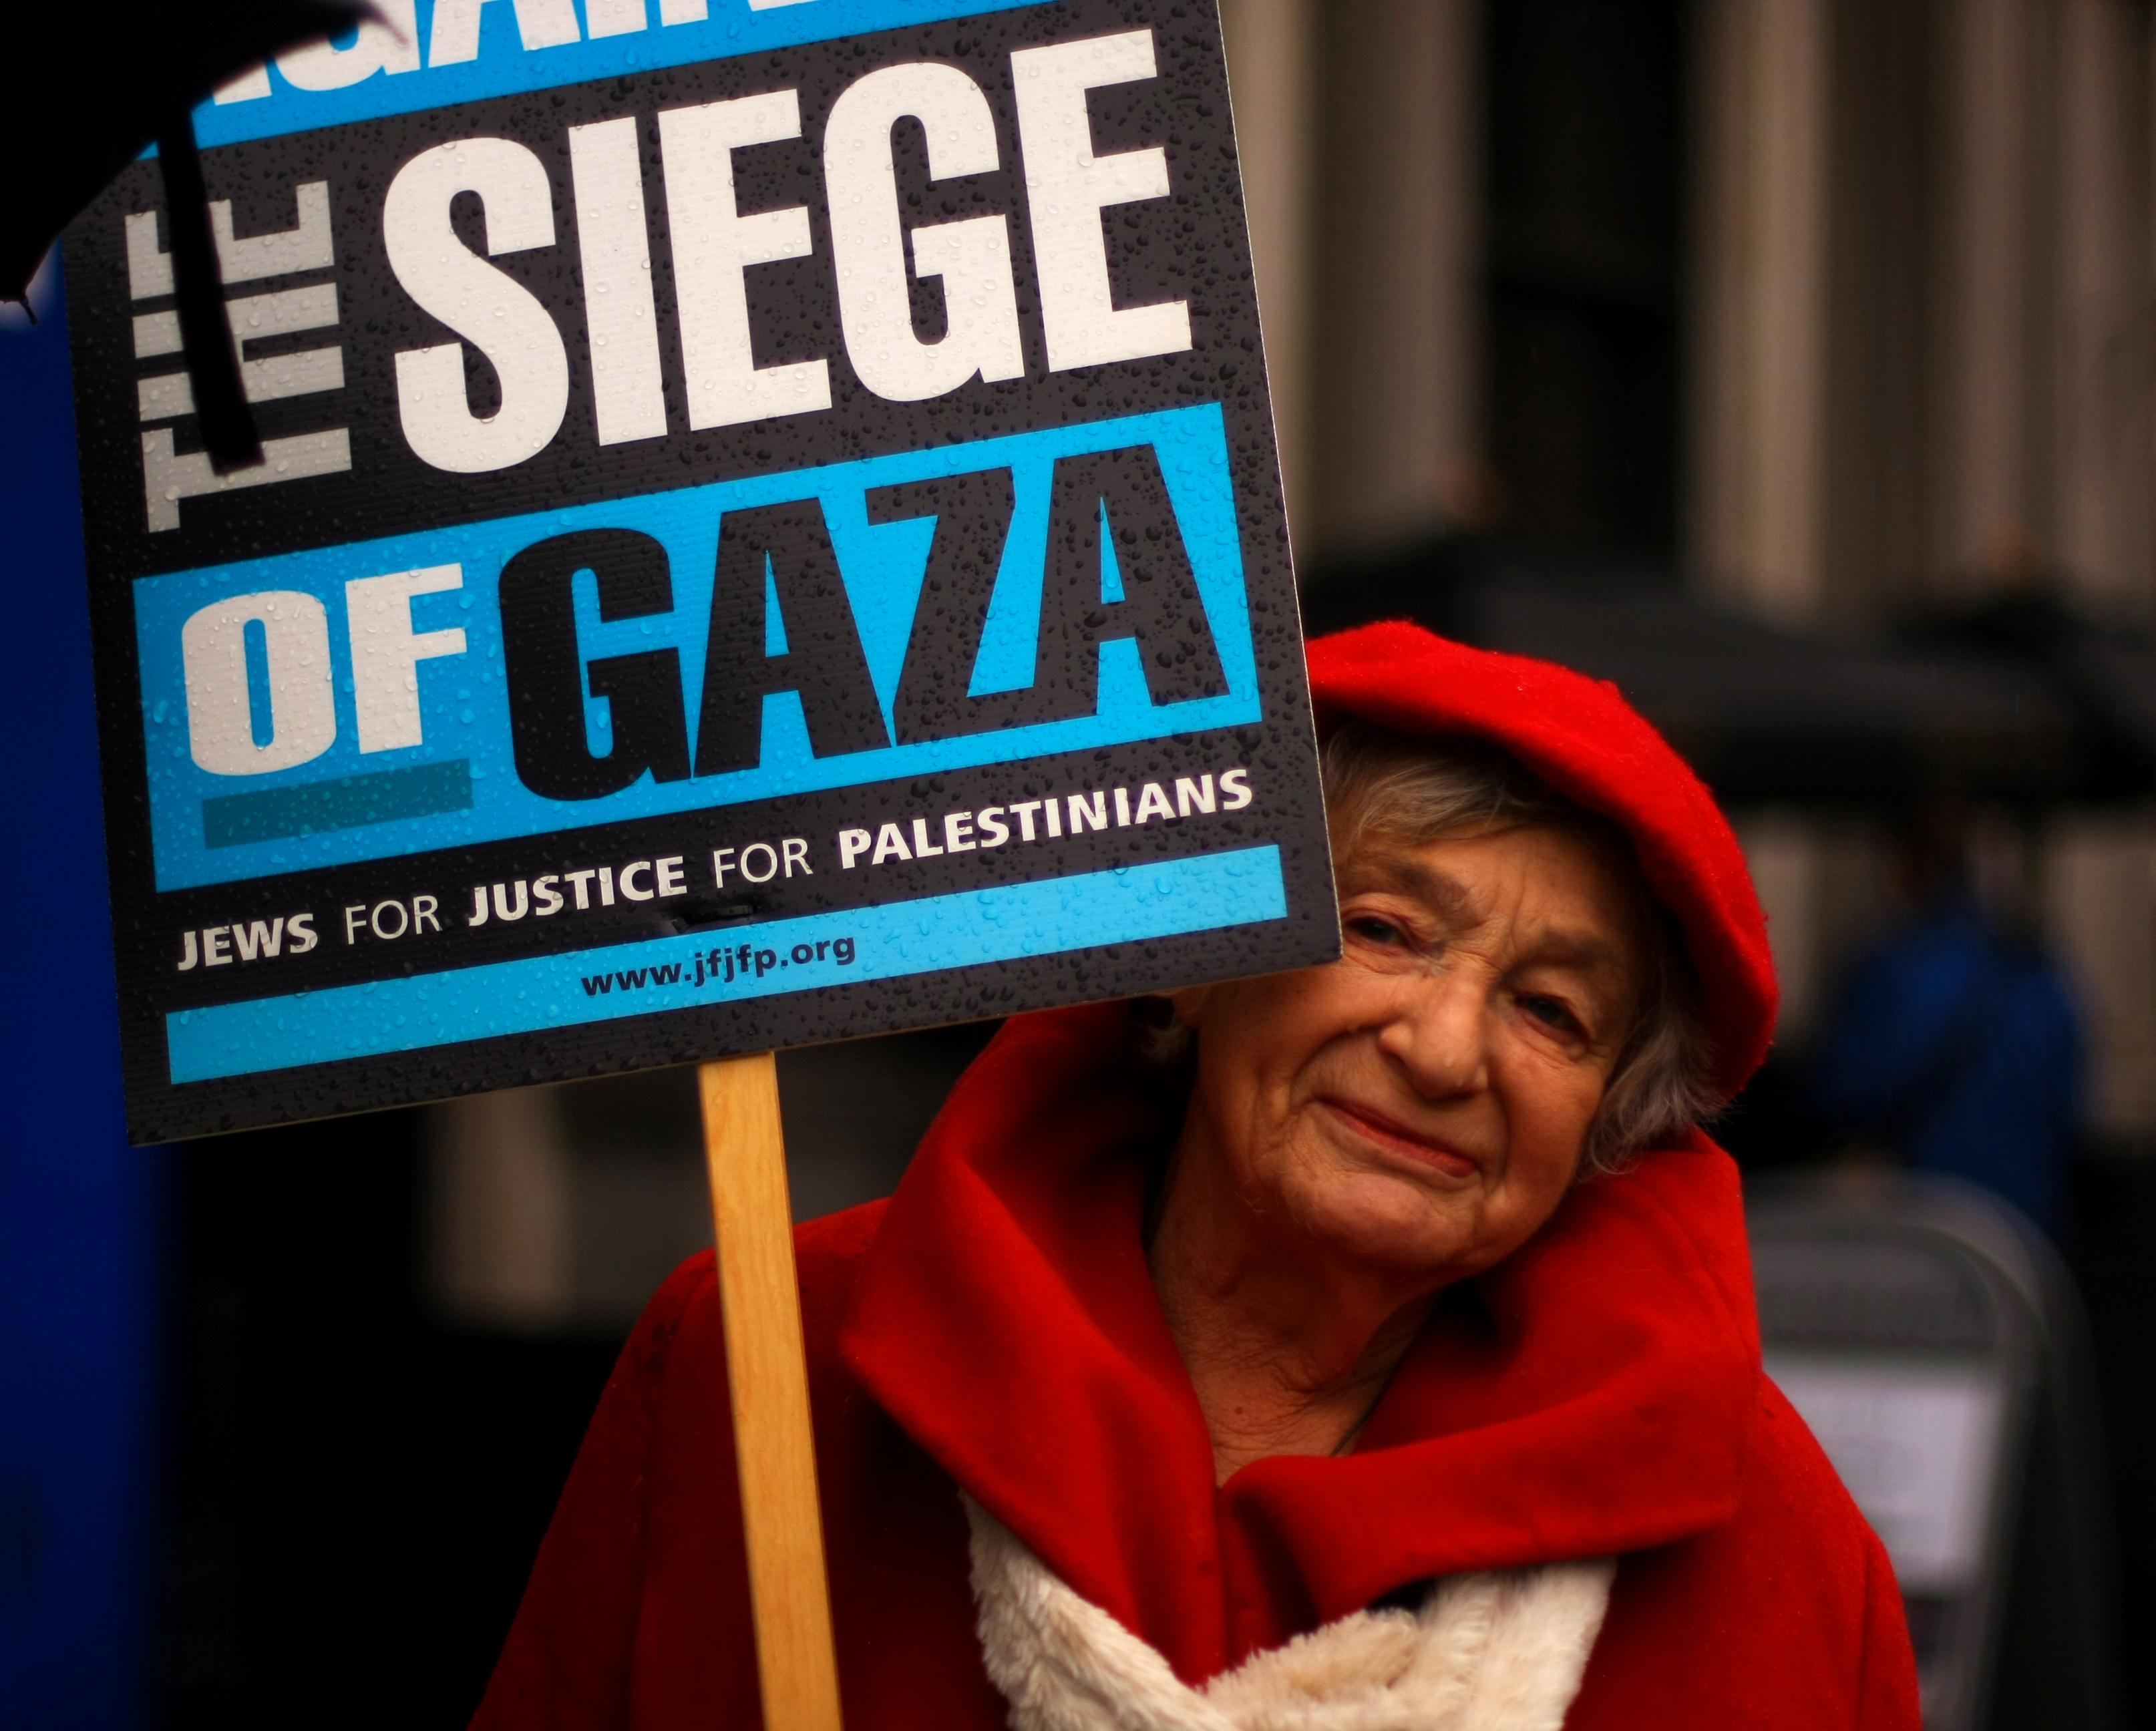 "Jews against the siege of Gaza" - denne søte gamle damen fant jeg på demonstrasjon i London i november 2012. Bildet er kanskje ikke et mesterverk, men motivet er spennende likevel. Uten øyekontakt hadde det ikke vært noe å se to ganger på.Foto: Hanna Magnussen Krogvold